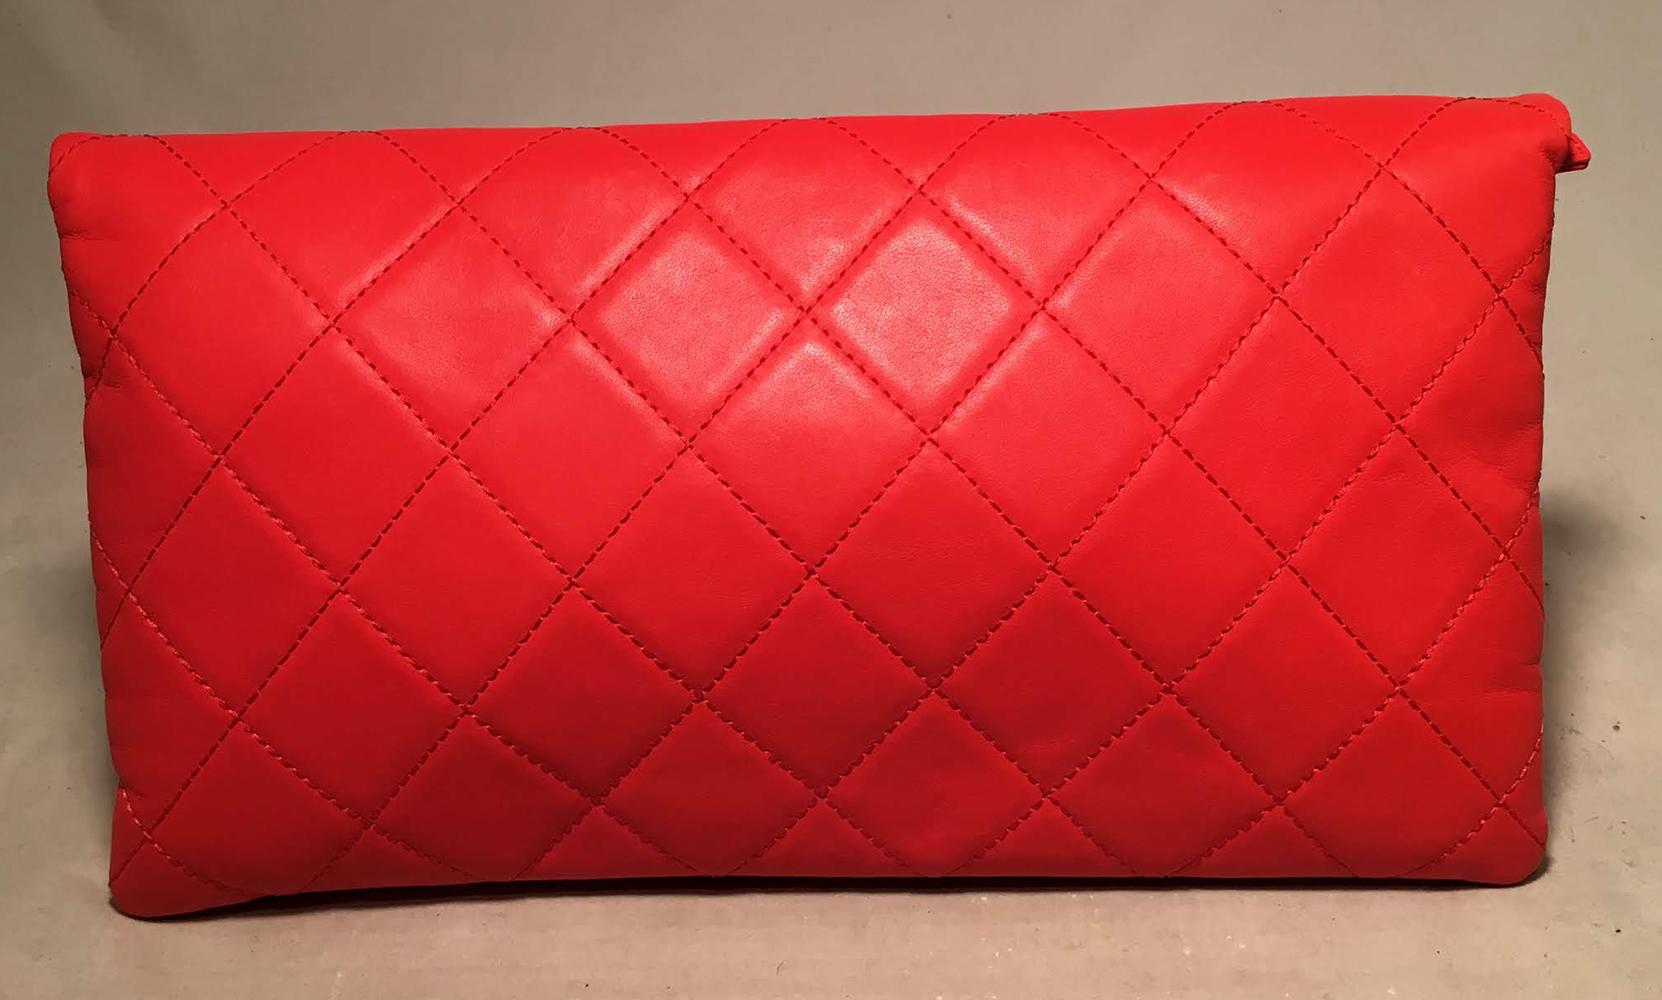 Chanel Red Quilted Leather CC Fold Over Clutch in ausgezeichnetem Zustand. Leuchtend rotes, gestepptes Leder mit mattgoldener CC Logo-Hardware entlang der vorderen oberen Falte. Zwei Innenfächer mit Reißverschluss, ausgekleidet mit rotem Nylon.